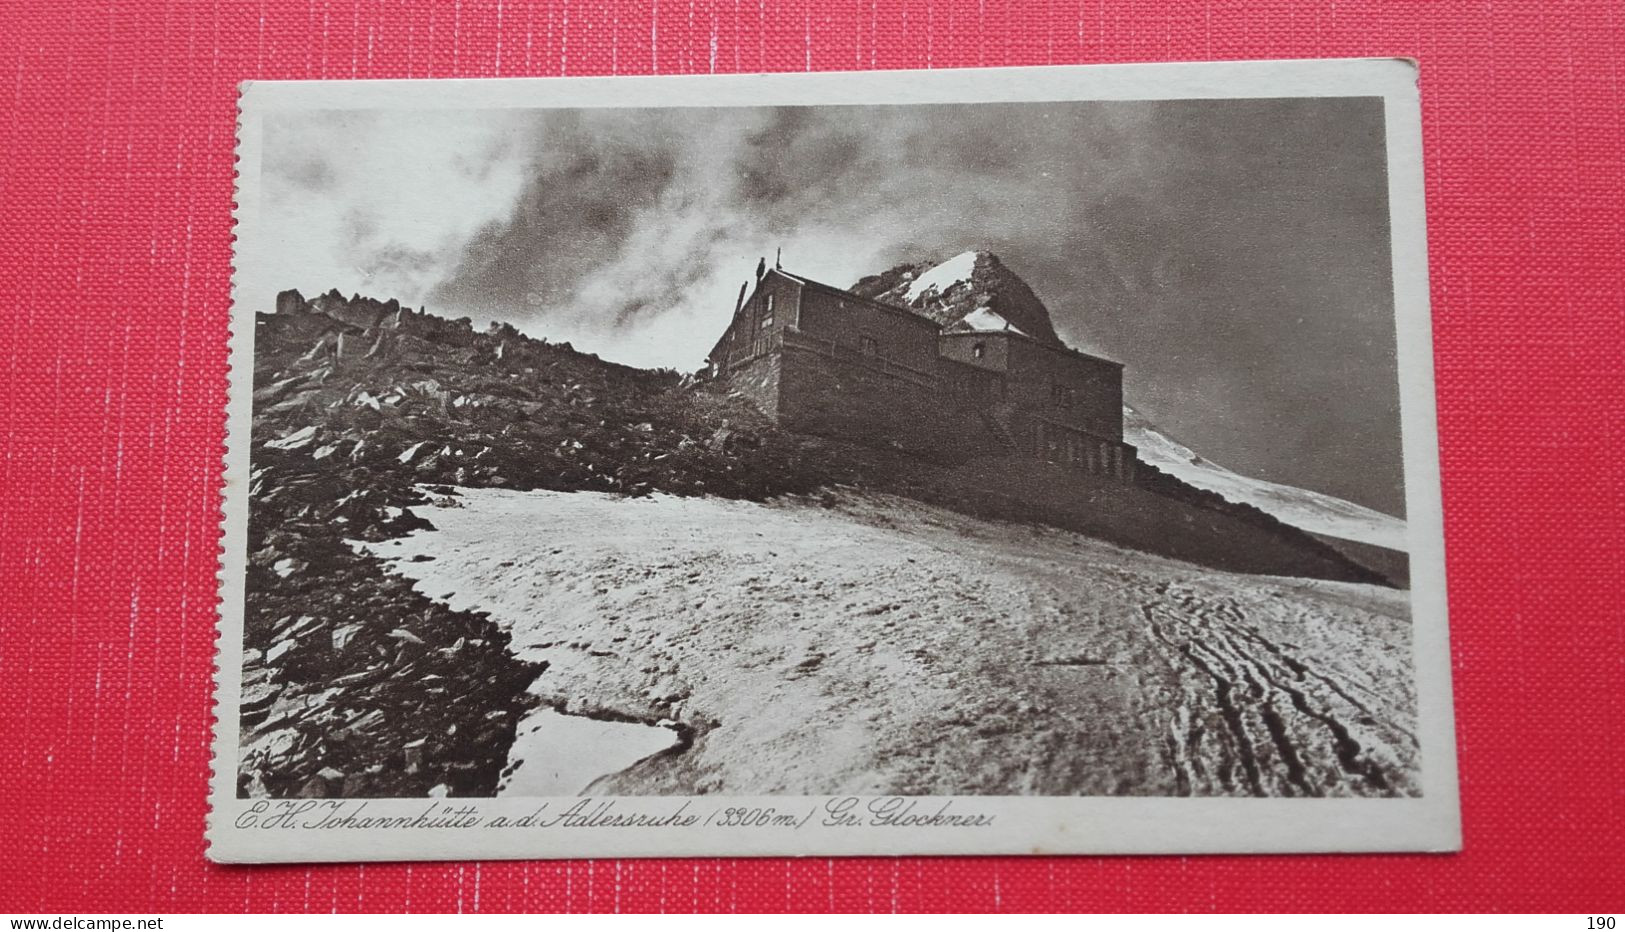 8 postcards.Grossglockner.Karl Jurischek,Salzburg